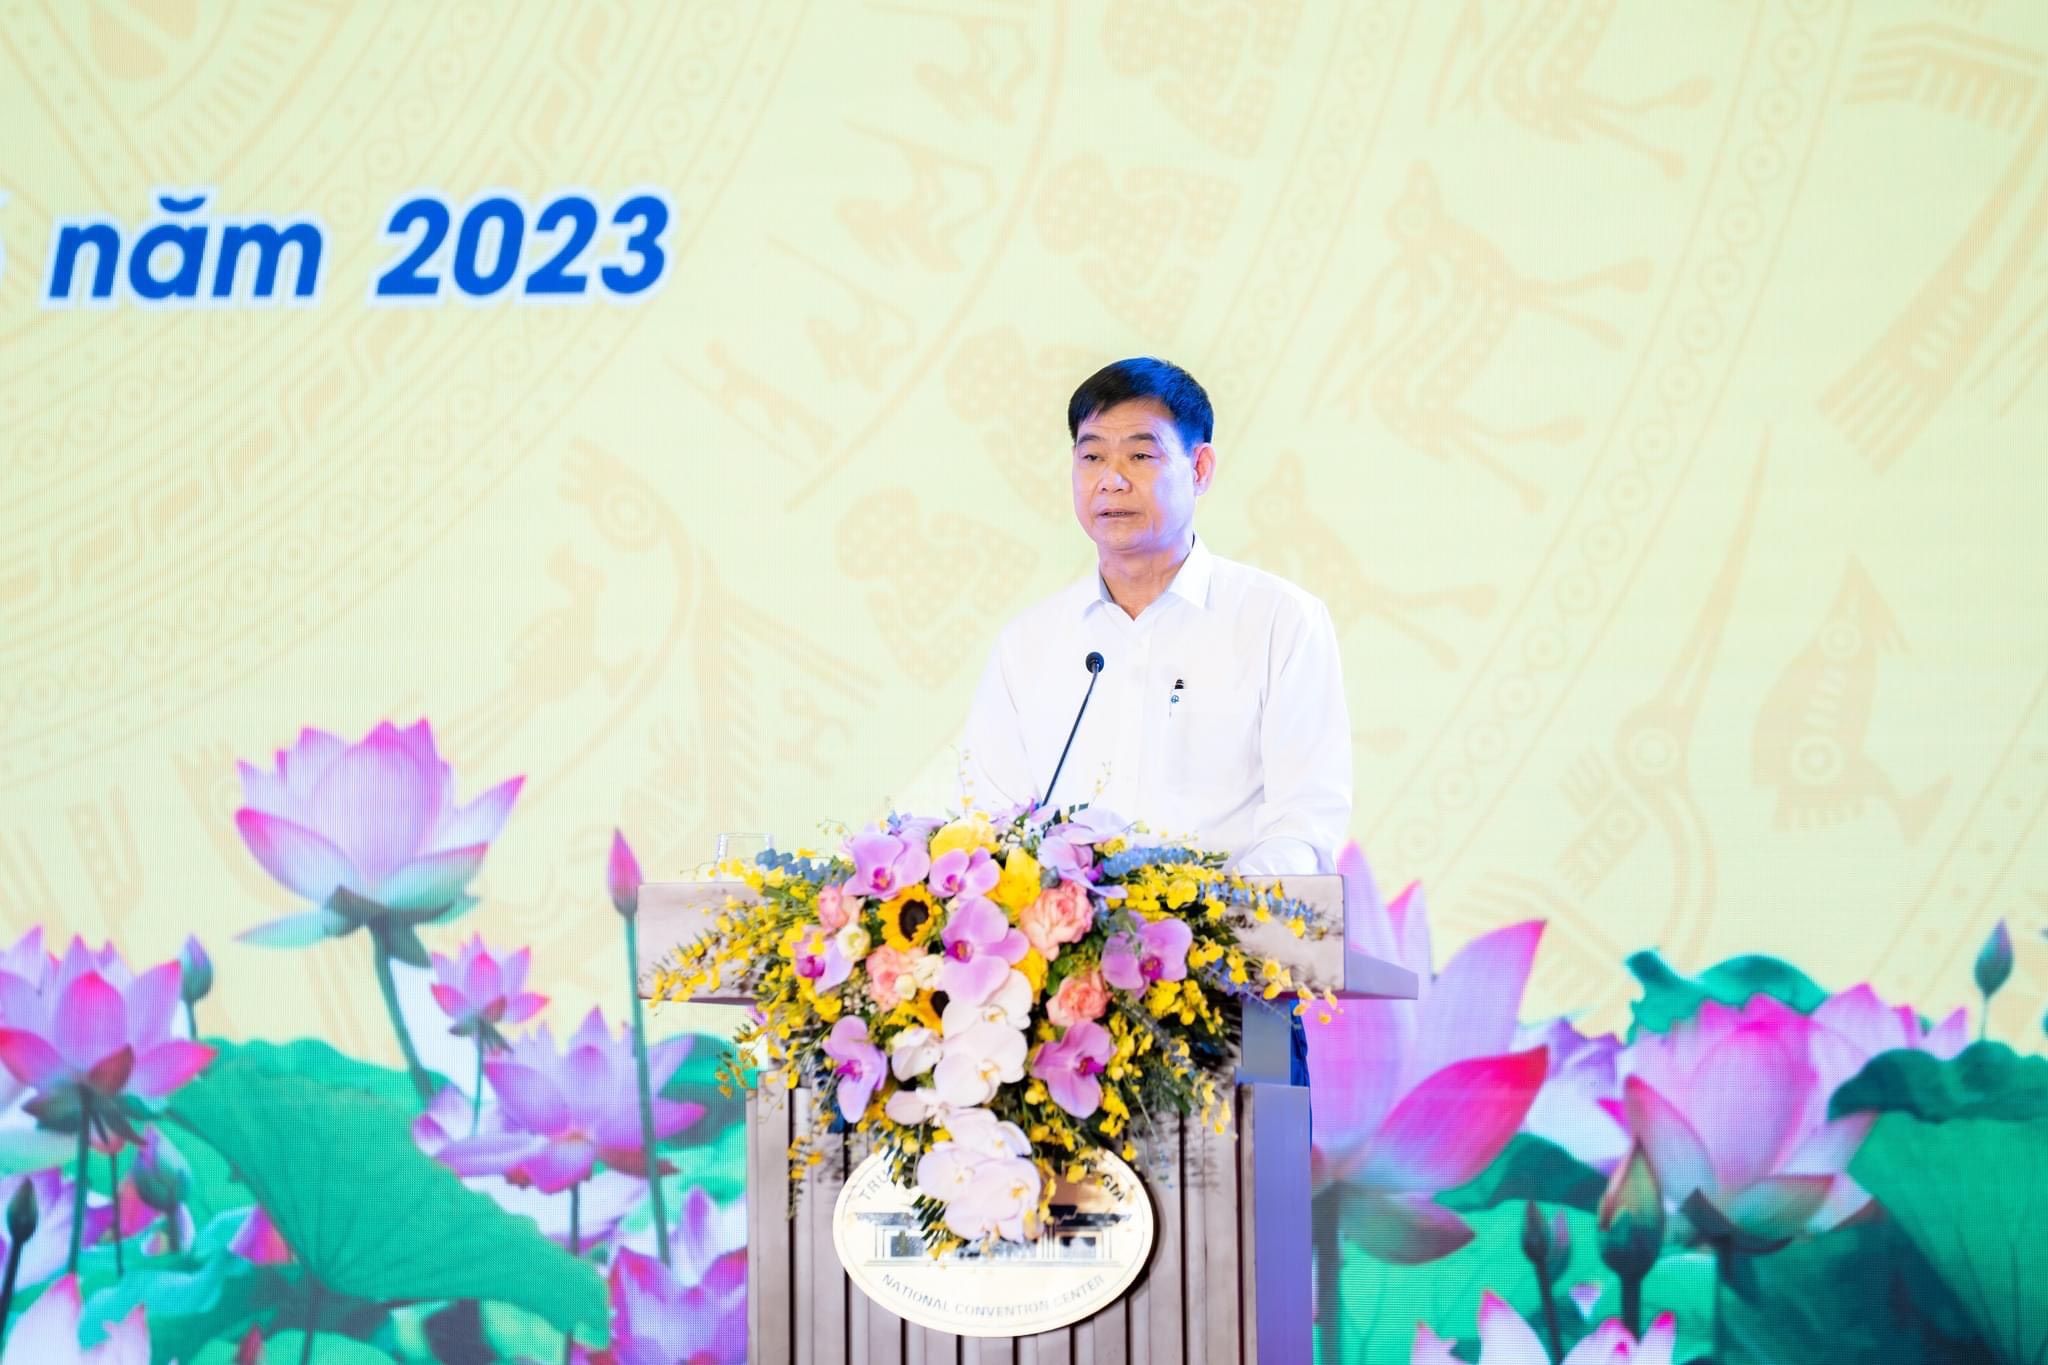 TKV tổ chức Hội nghị Người lao động năm 2023 thành công tốt đẹp - Ảnh 9